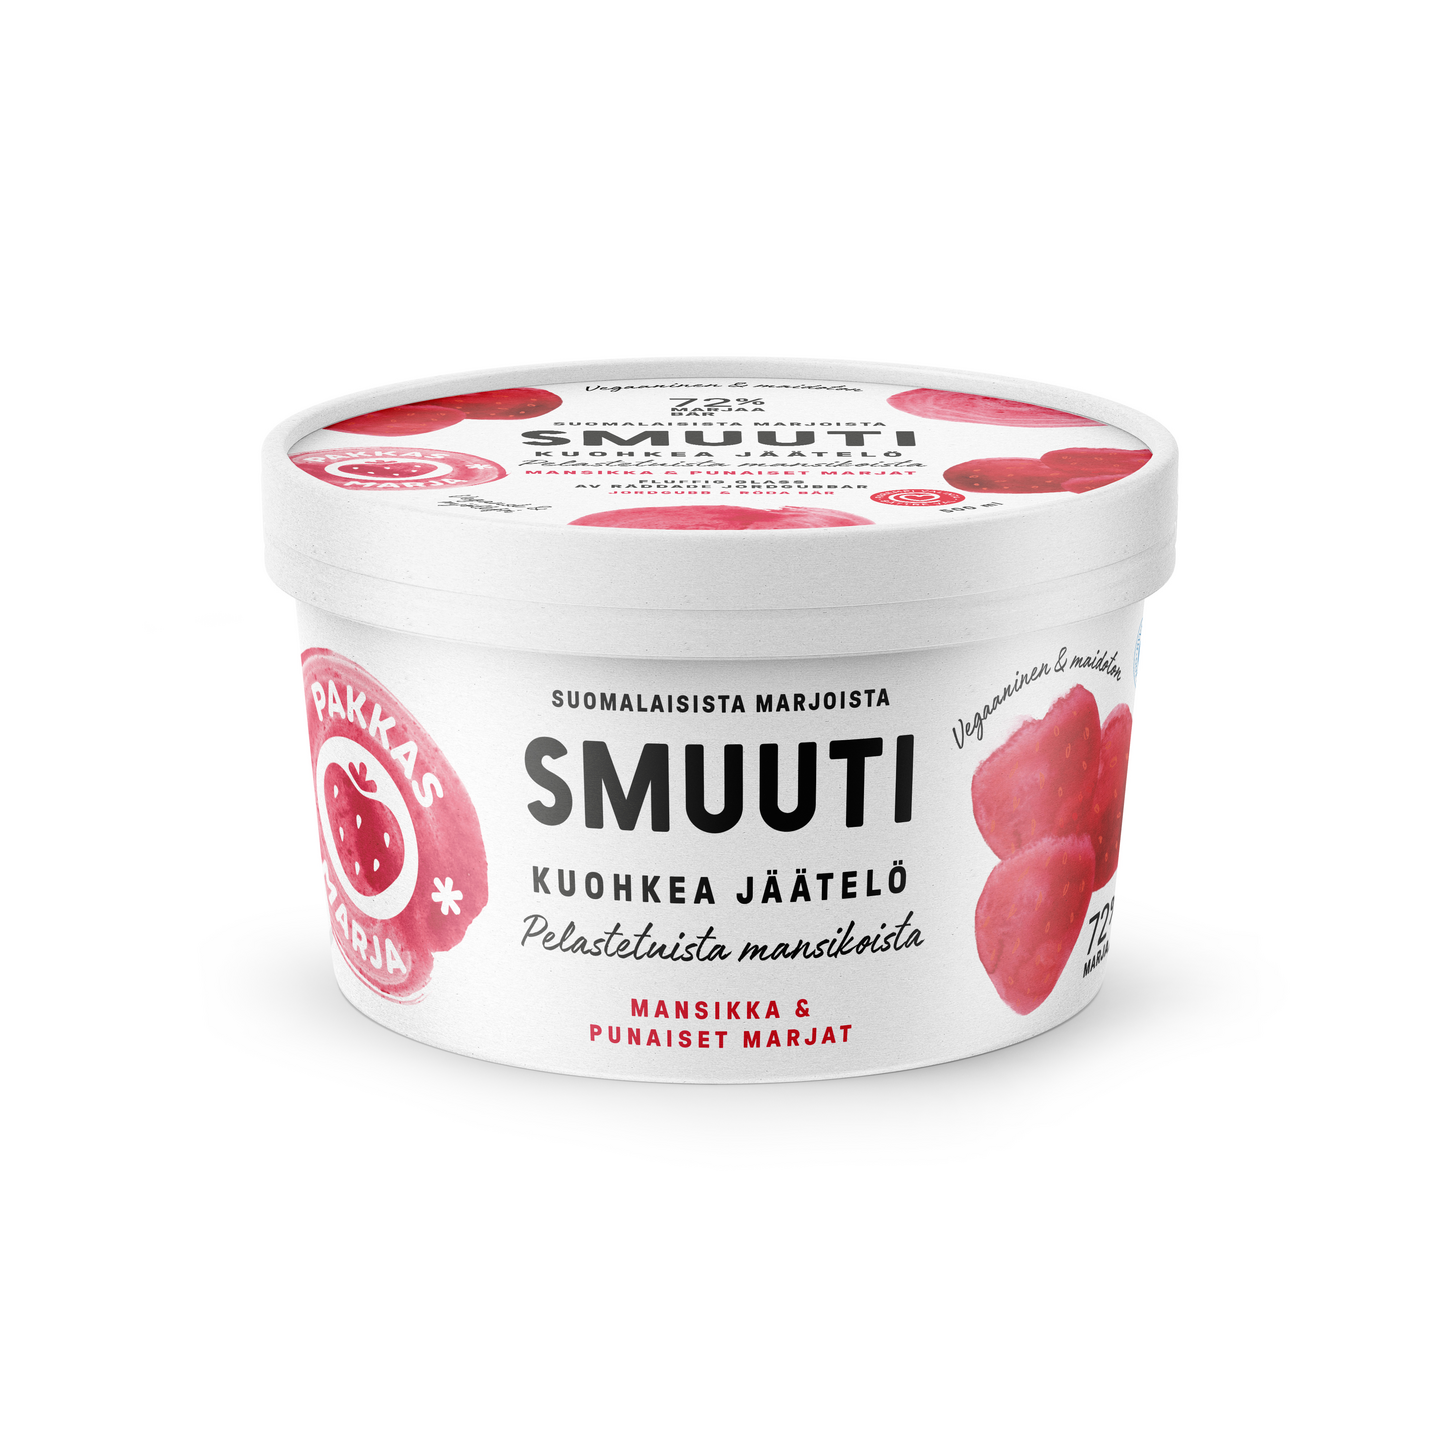 Pakkasmarja Smuuti jäätelö Mansikka & punaiset marjat 500ml